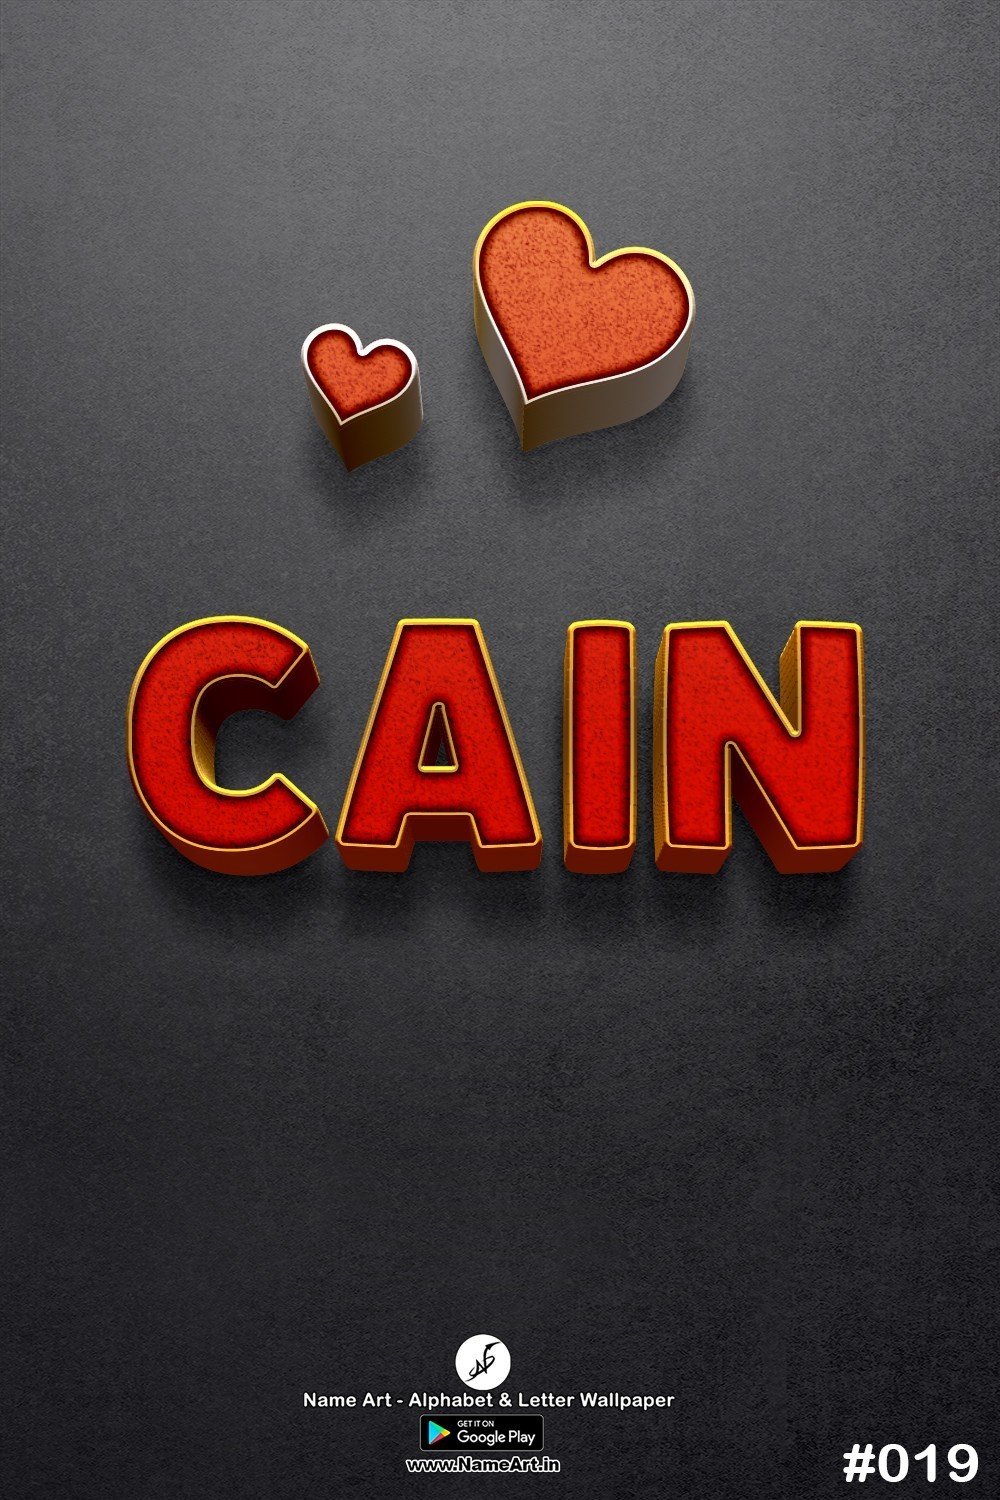 Cain | Whatsapp Status Cain | Happy Birthday Cain !! | New Whatsapp Status Cain Images |